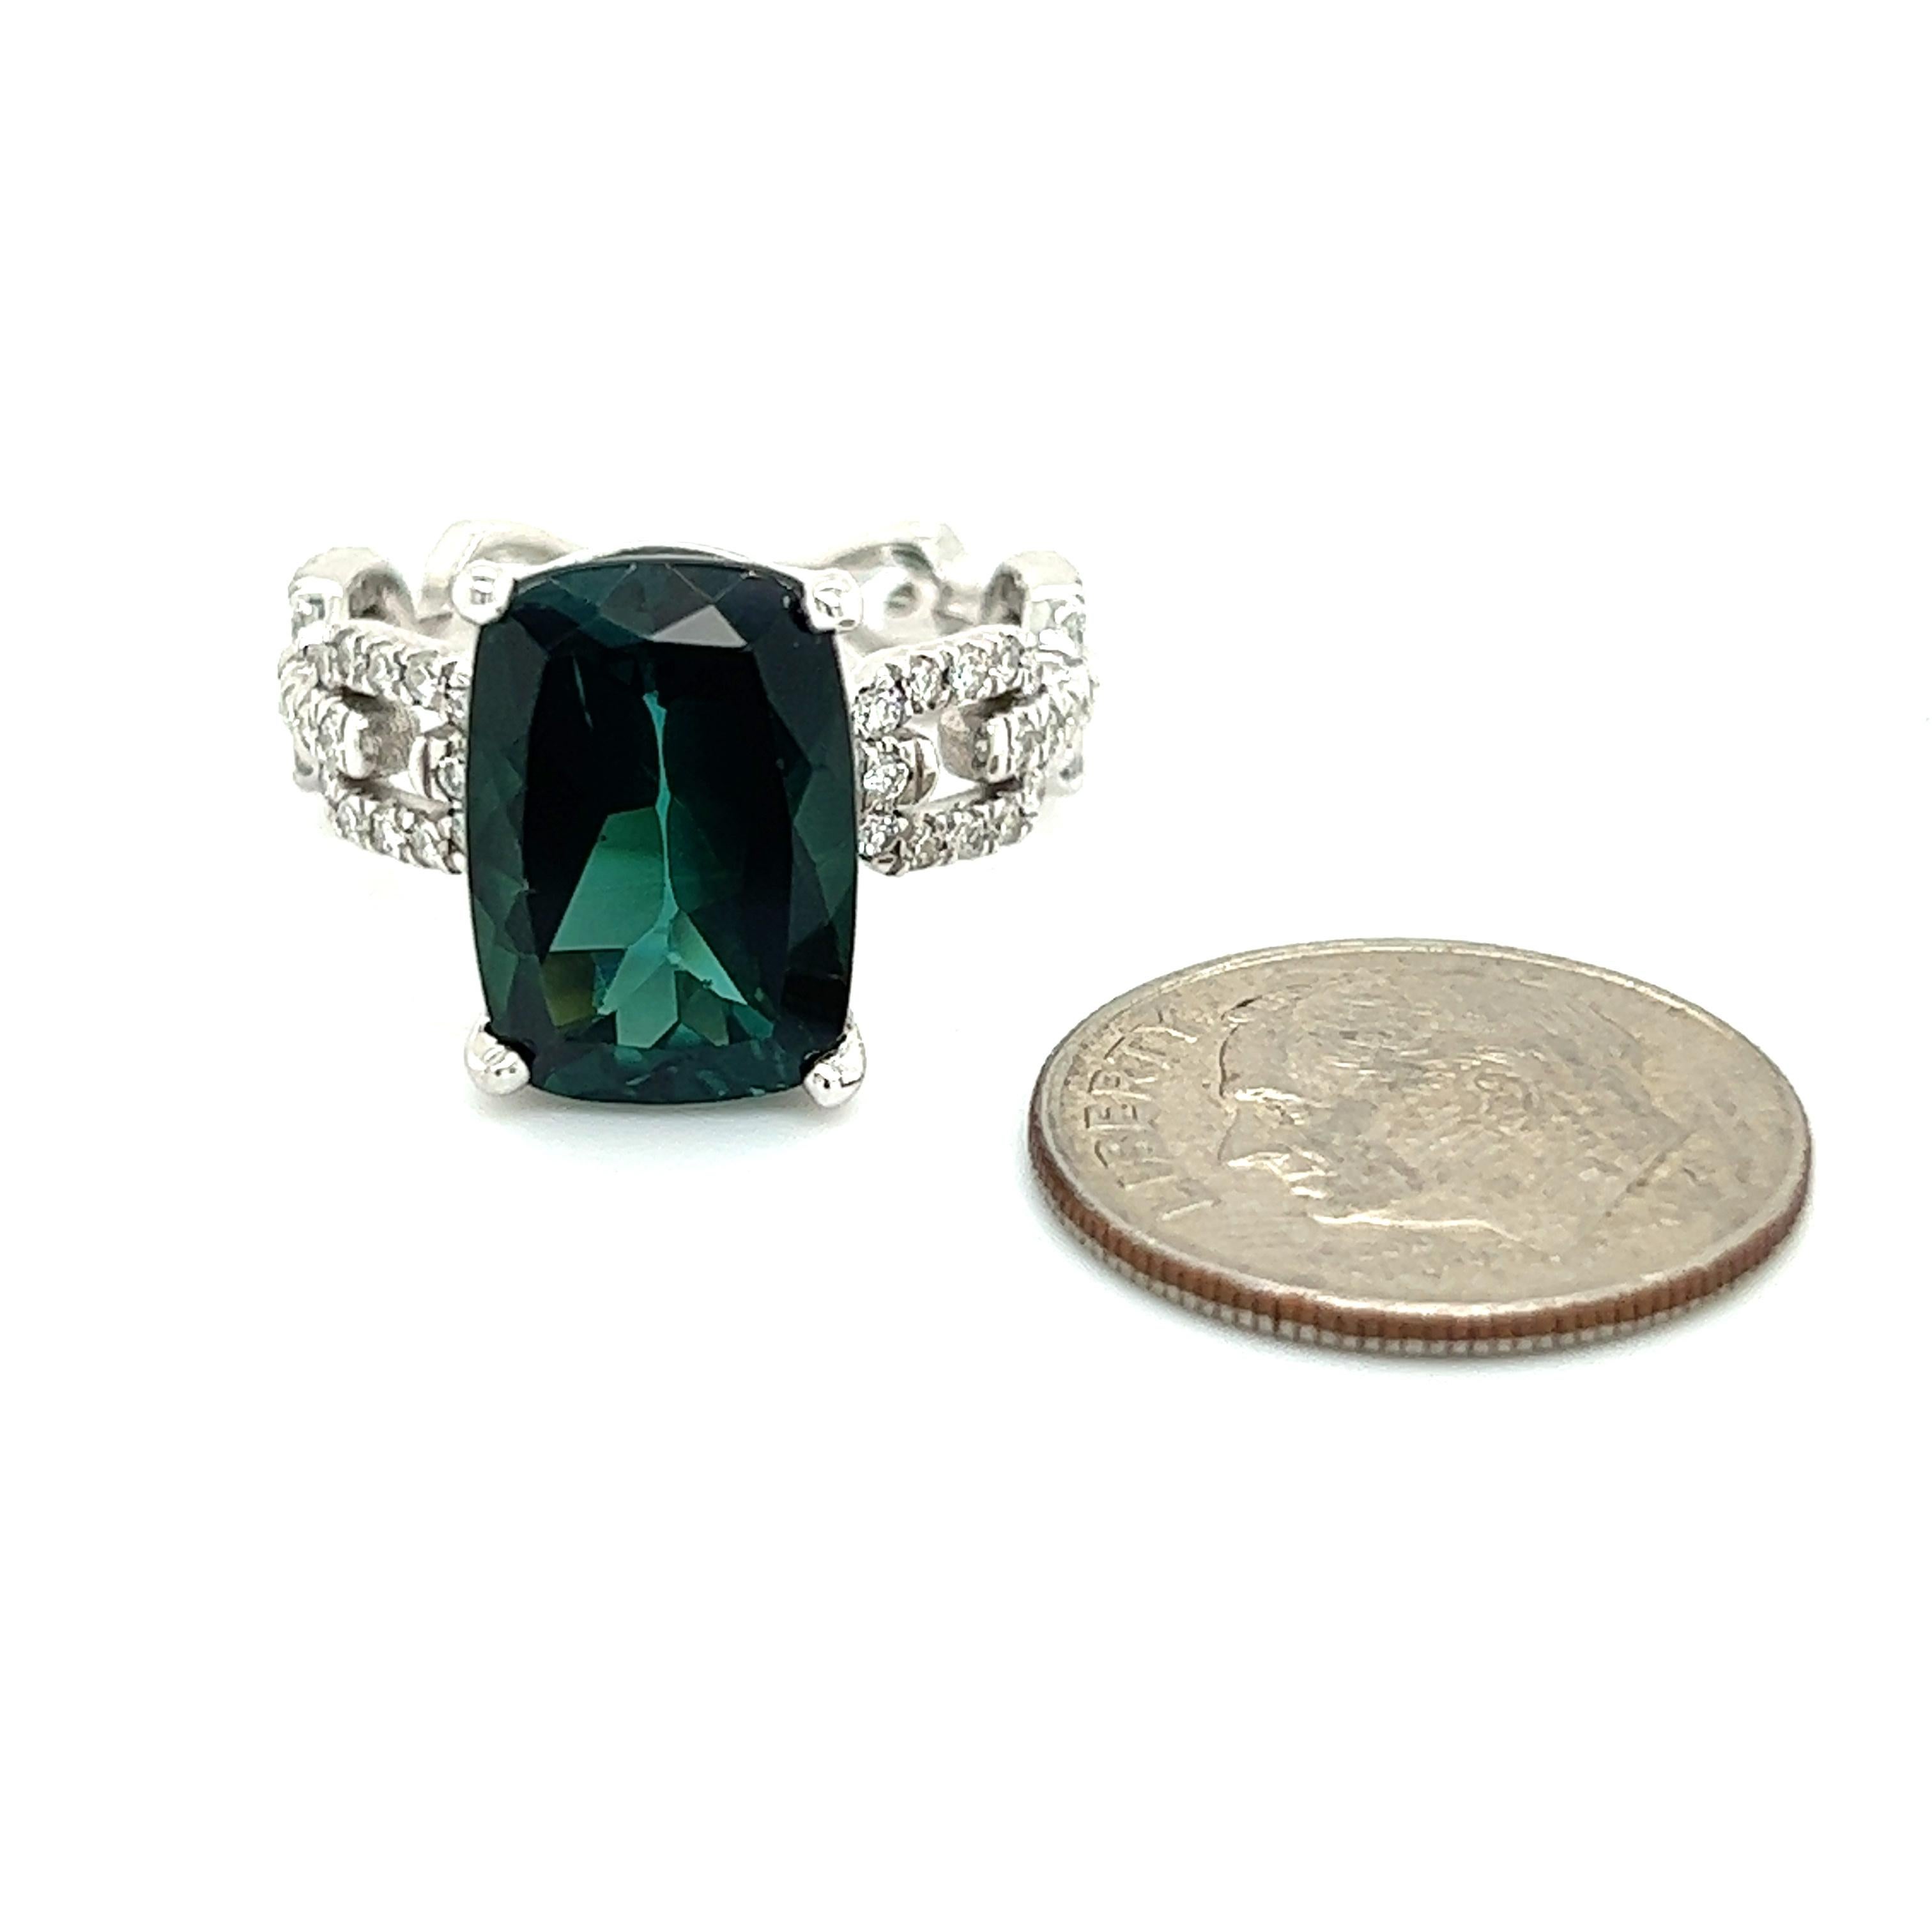 Natürlicher Turmalin Diamant Ring 6,5 14k Weißgold 6,32 TCW zertifiziert $5,495 216199

Dies ist ein einzigartiges, maßgeschneidertes, glamouröses Schmuckstück!

Nichts sagt mehr 